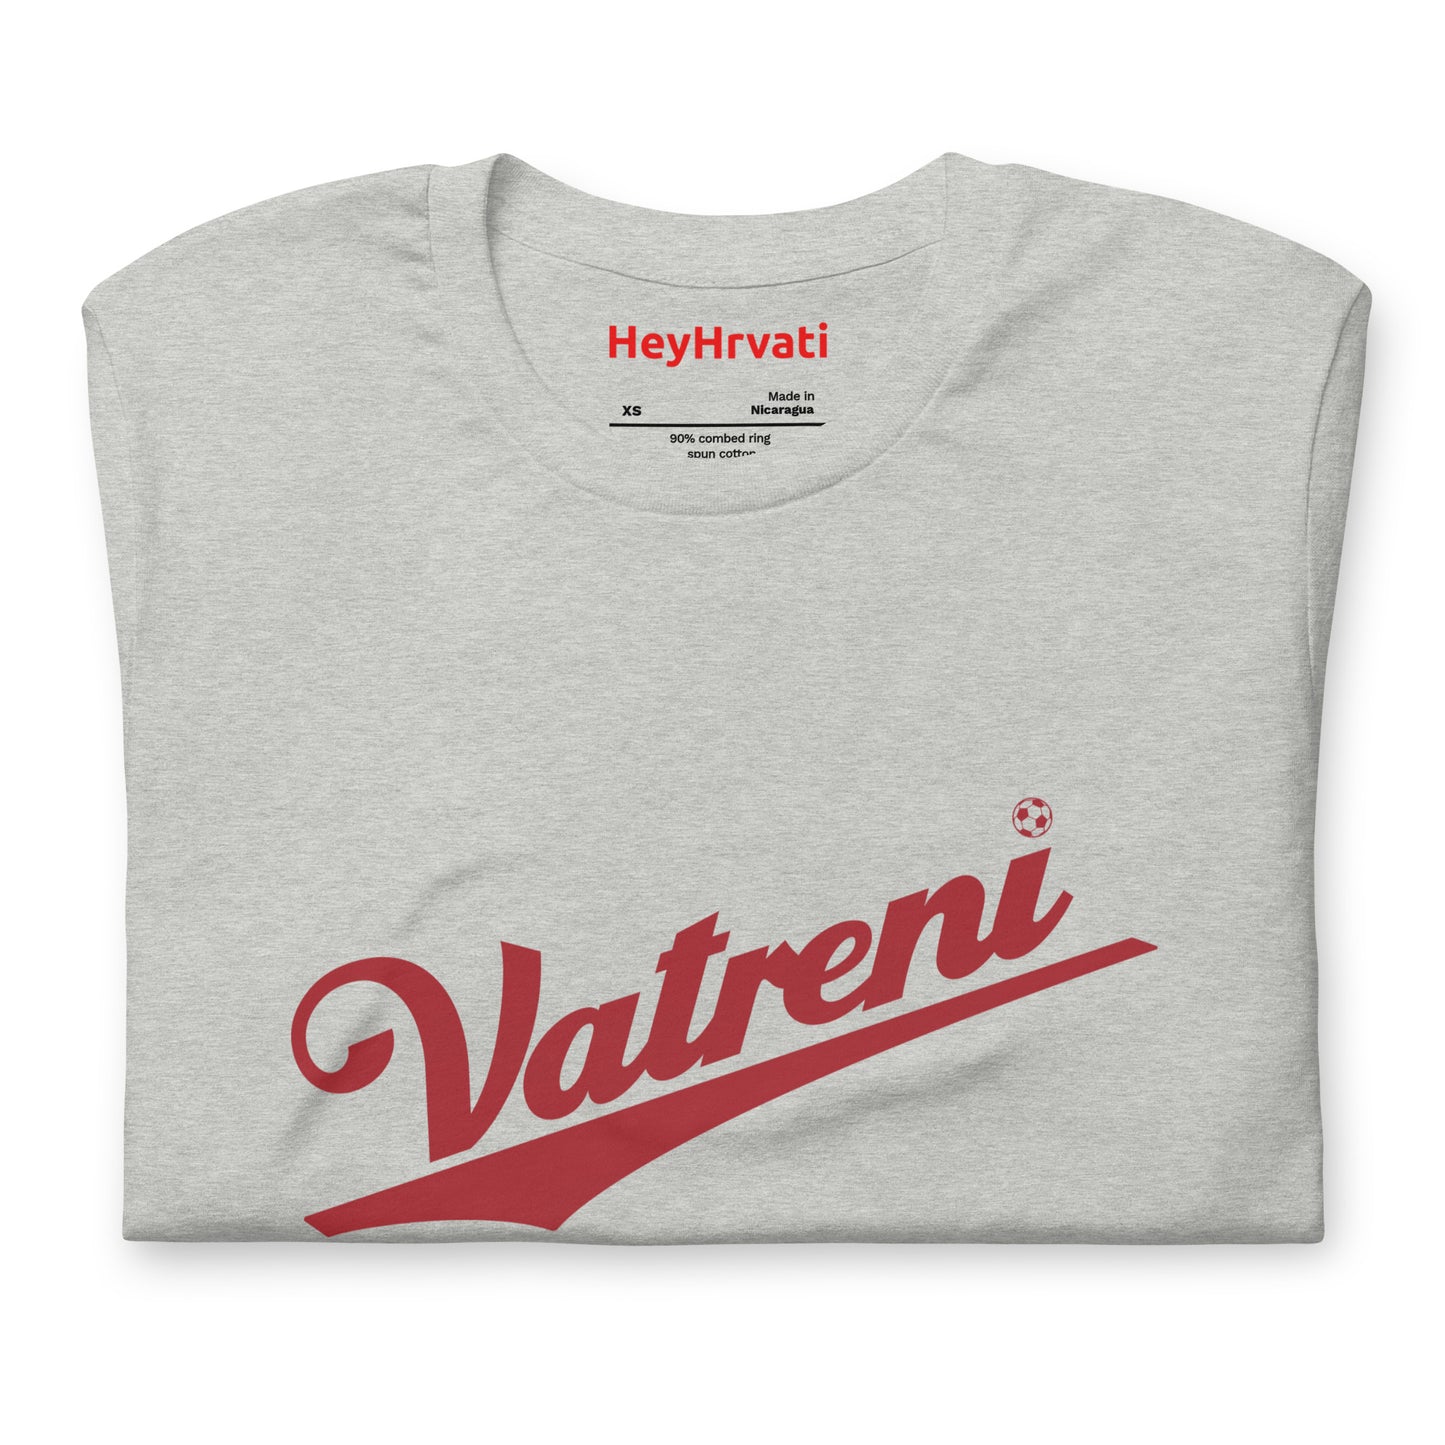 Vatreni (Red Print) T-Shirt